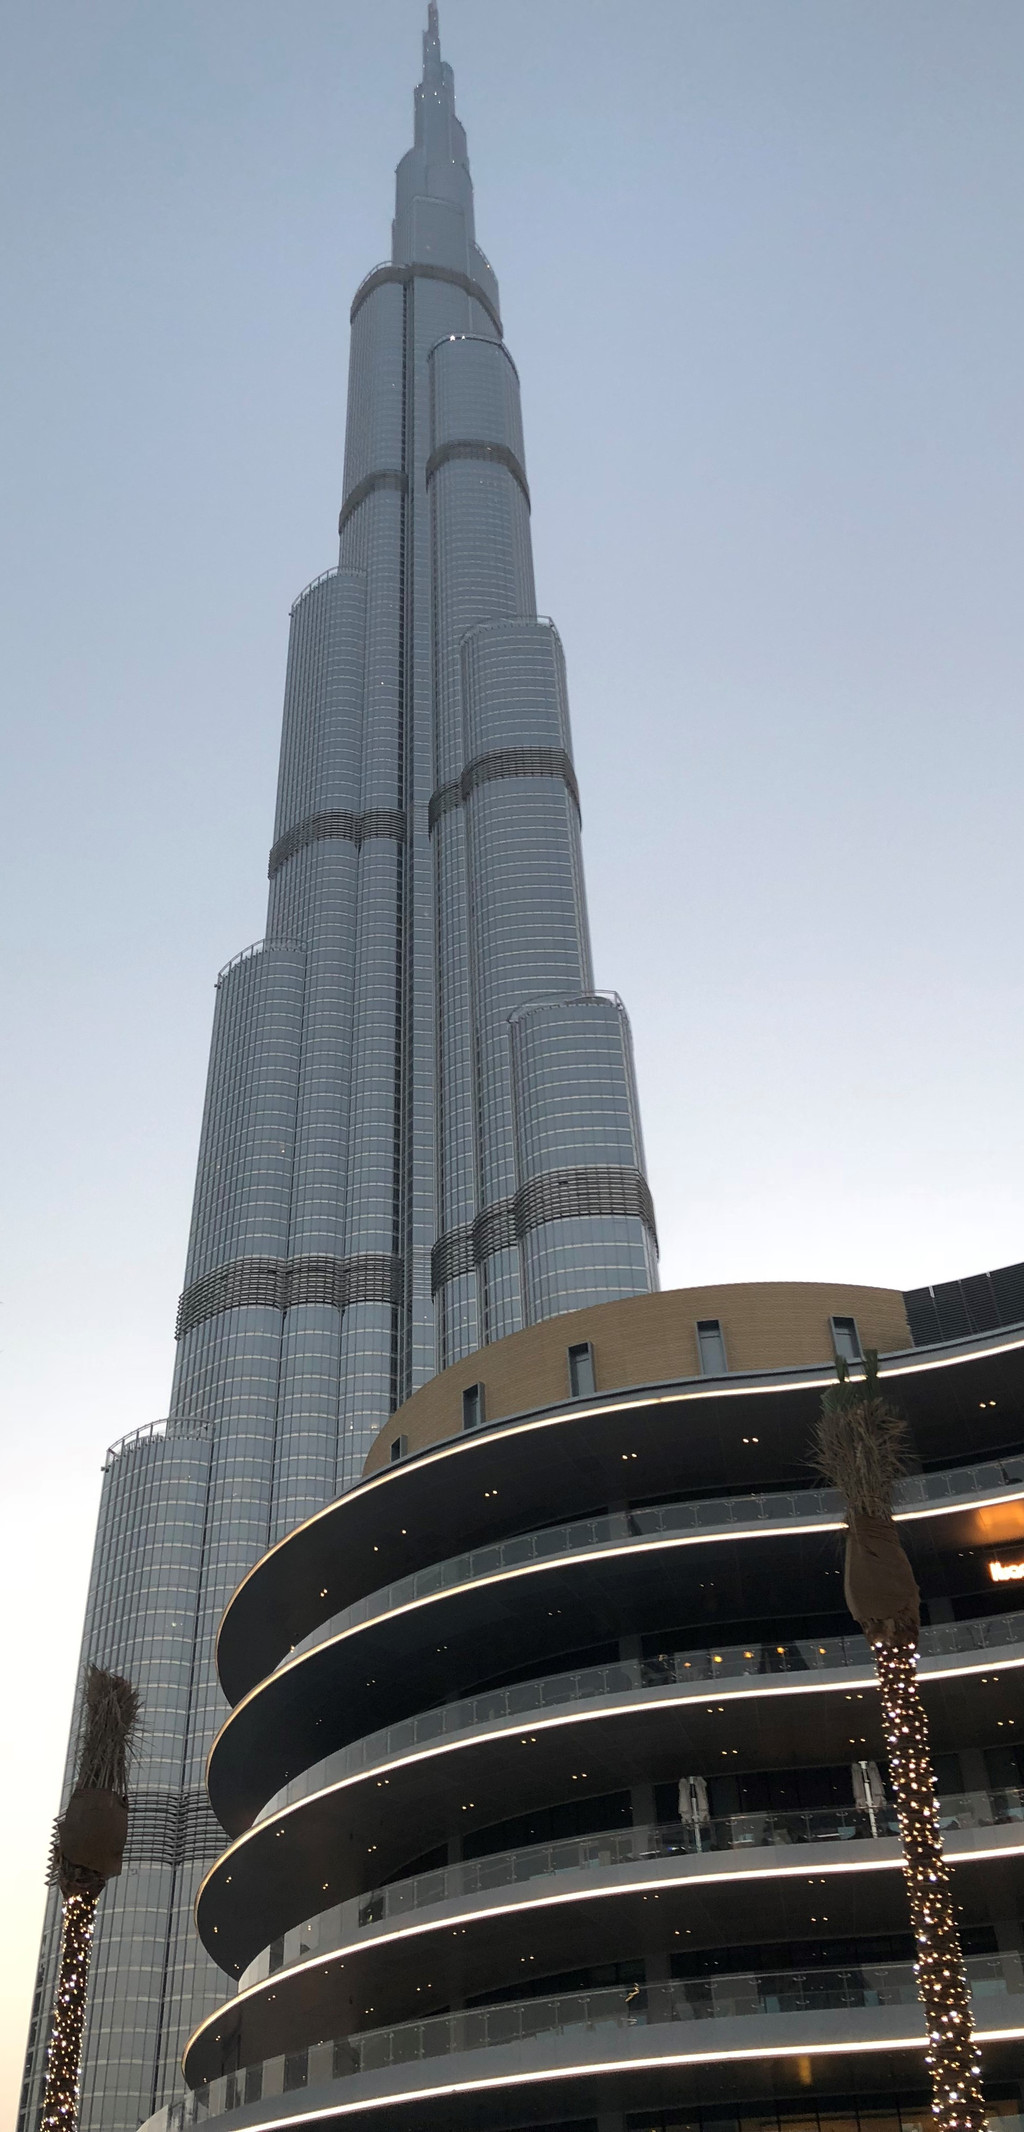 还没有开放,对面是到处都可以看到的阿联酋最大的建筑公司emaar标志